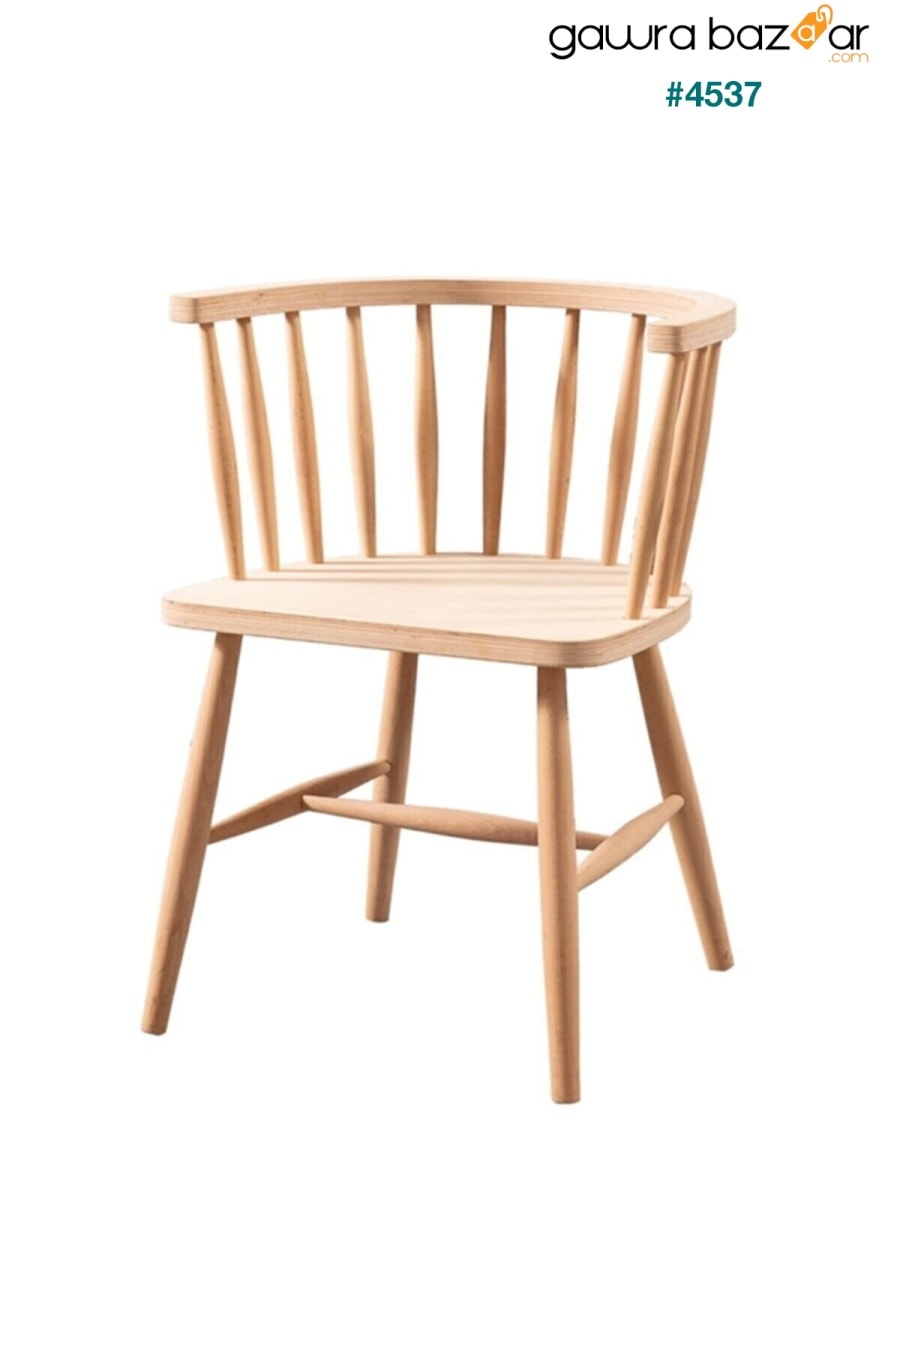 كرسي خشبي كرسي خشبي غير مصقول العمود الفقري CLK 0